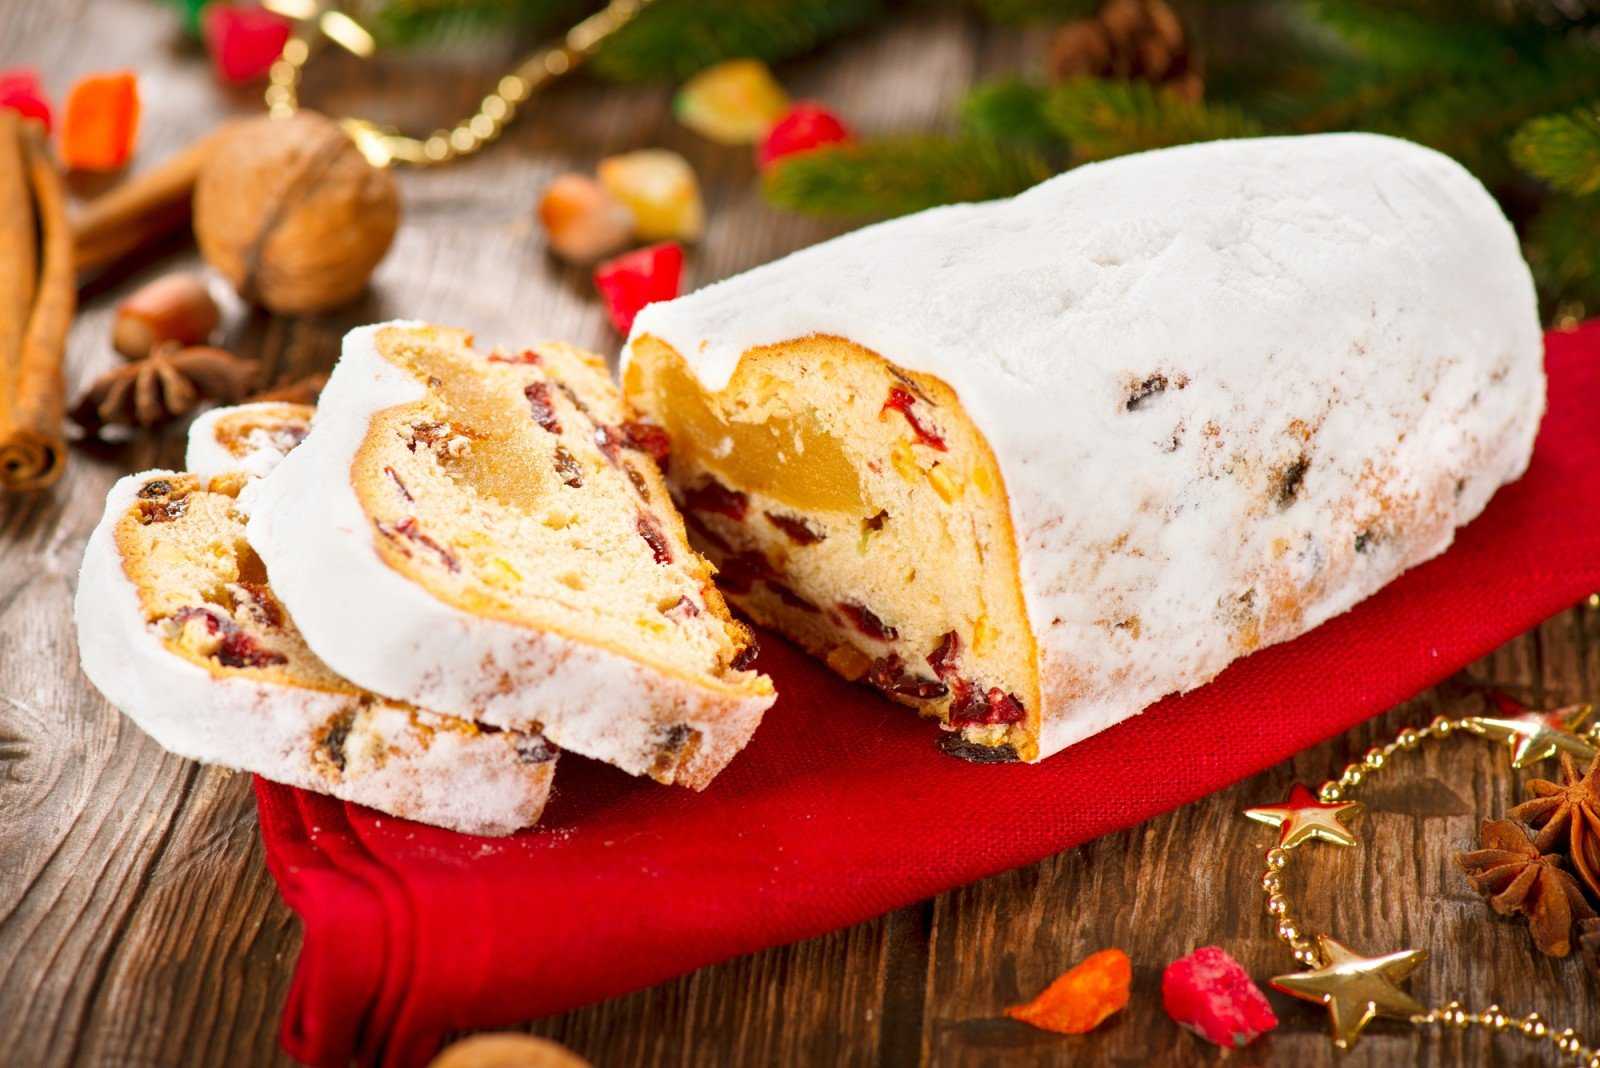 Как приготовить рождественский штоллен  8 простых рецептов традиционного немецкого кекса штоллен с пошаговыми фото По этим рецептам вы легко сделаете штоллен в домашних условиях